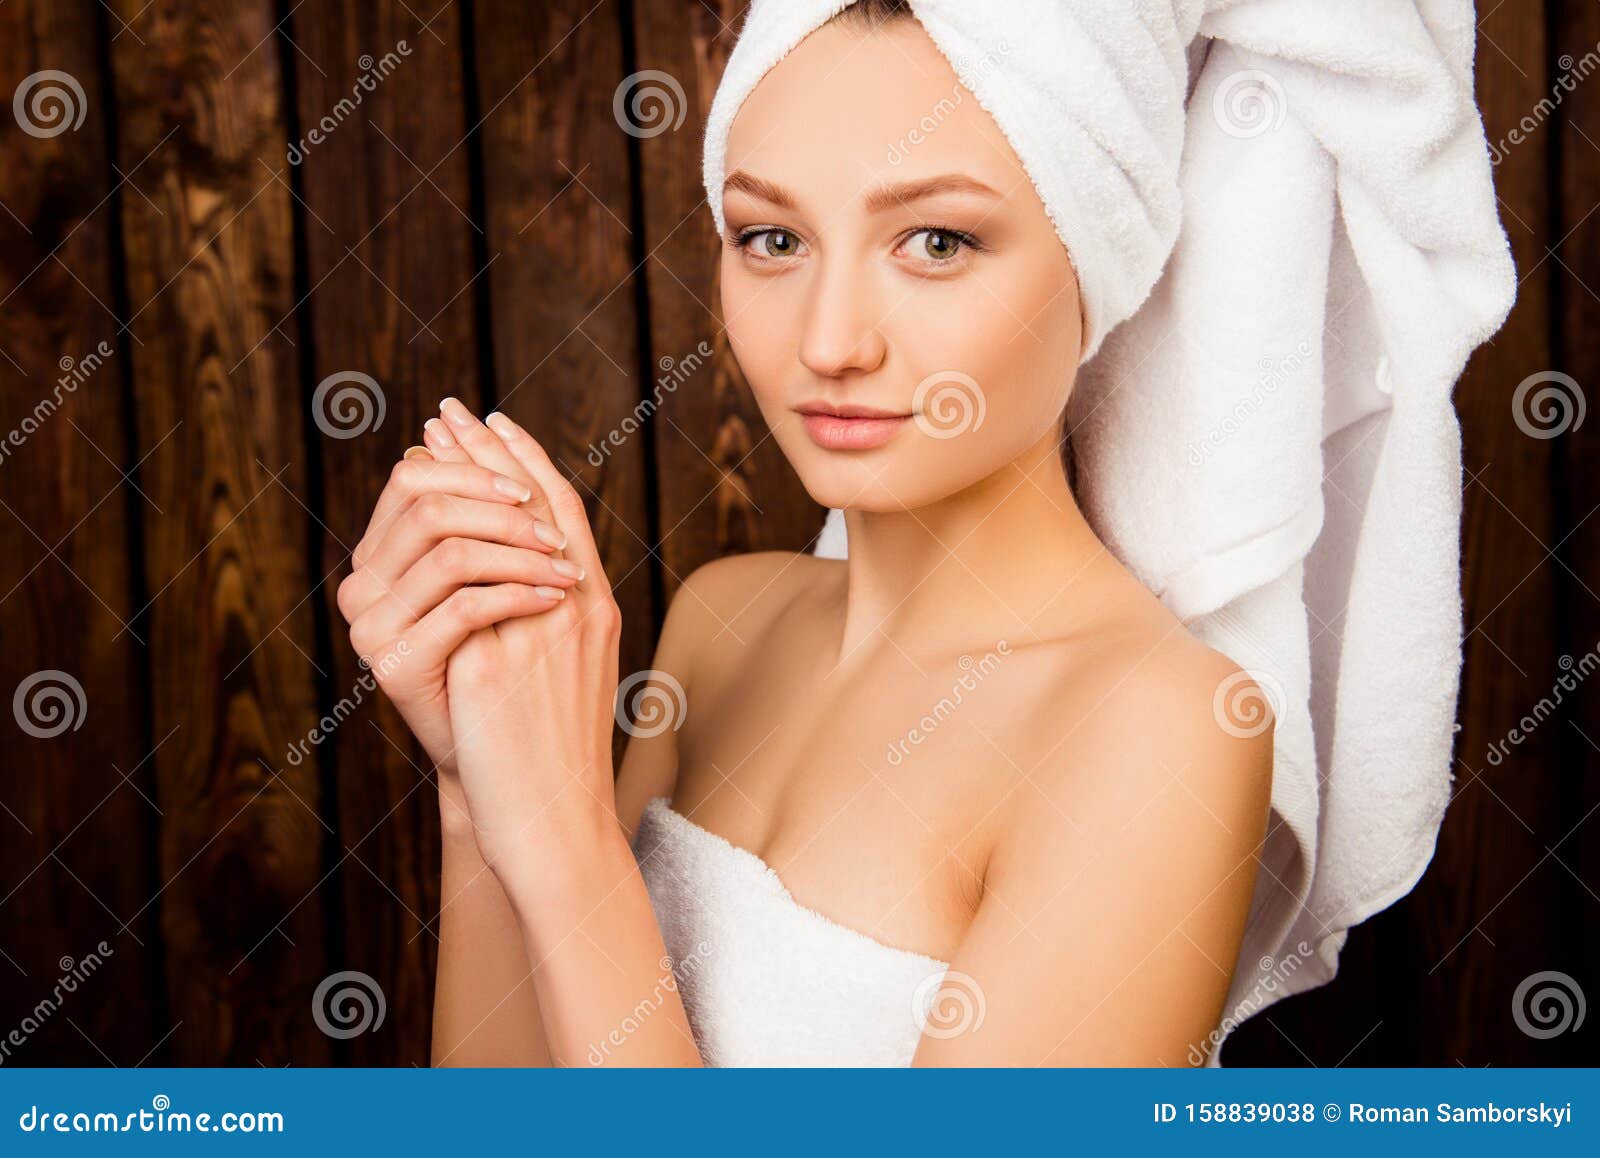 Девочка в полотенце. Девушка с полотенцем на голове. Девушка с полотенцем на голове спа. Фотомодели в полотенцах на голове. Красивая девушка в полотенце.